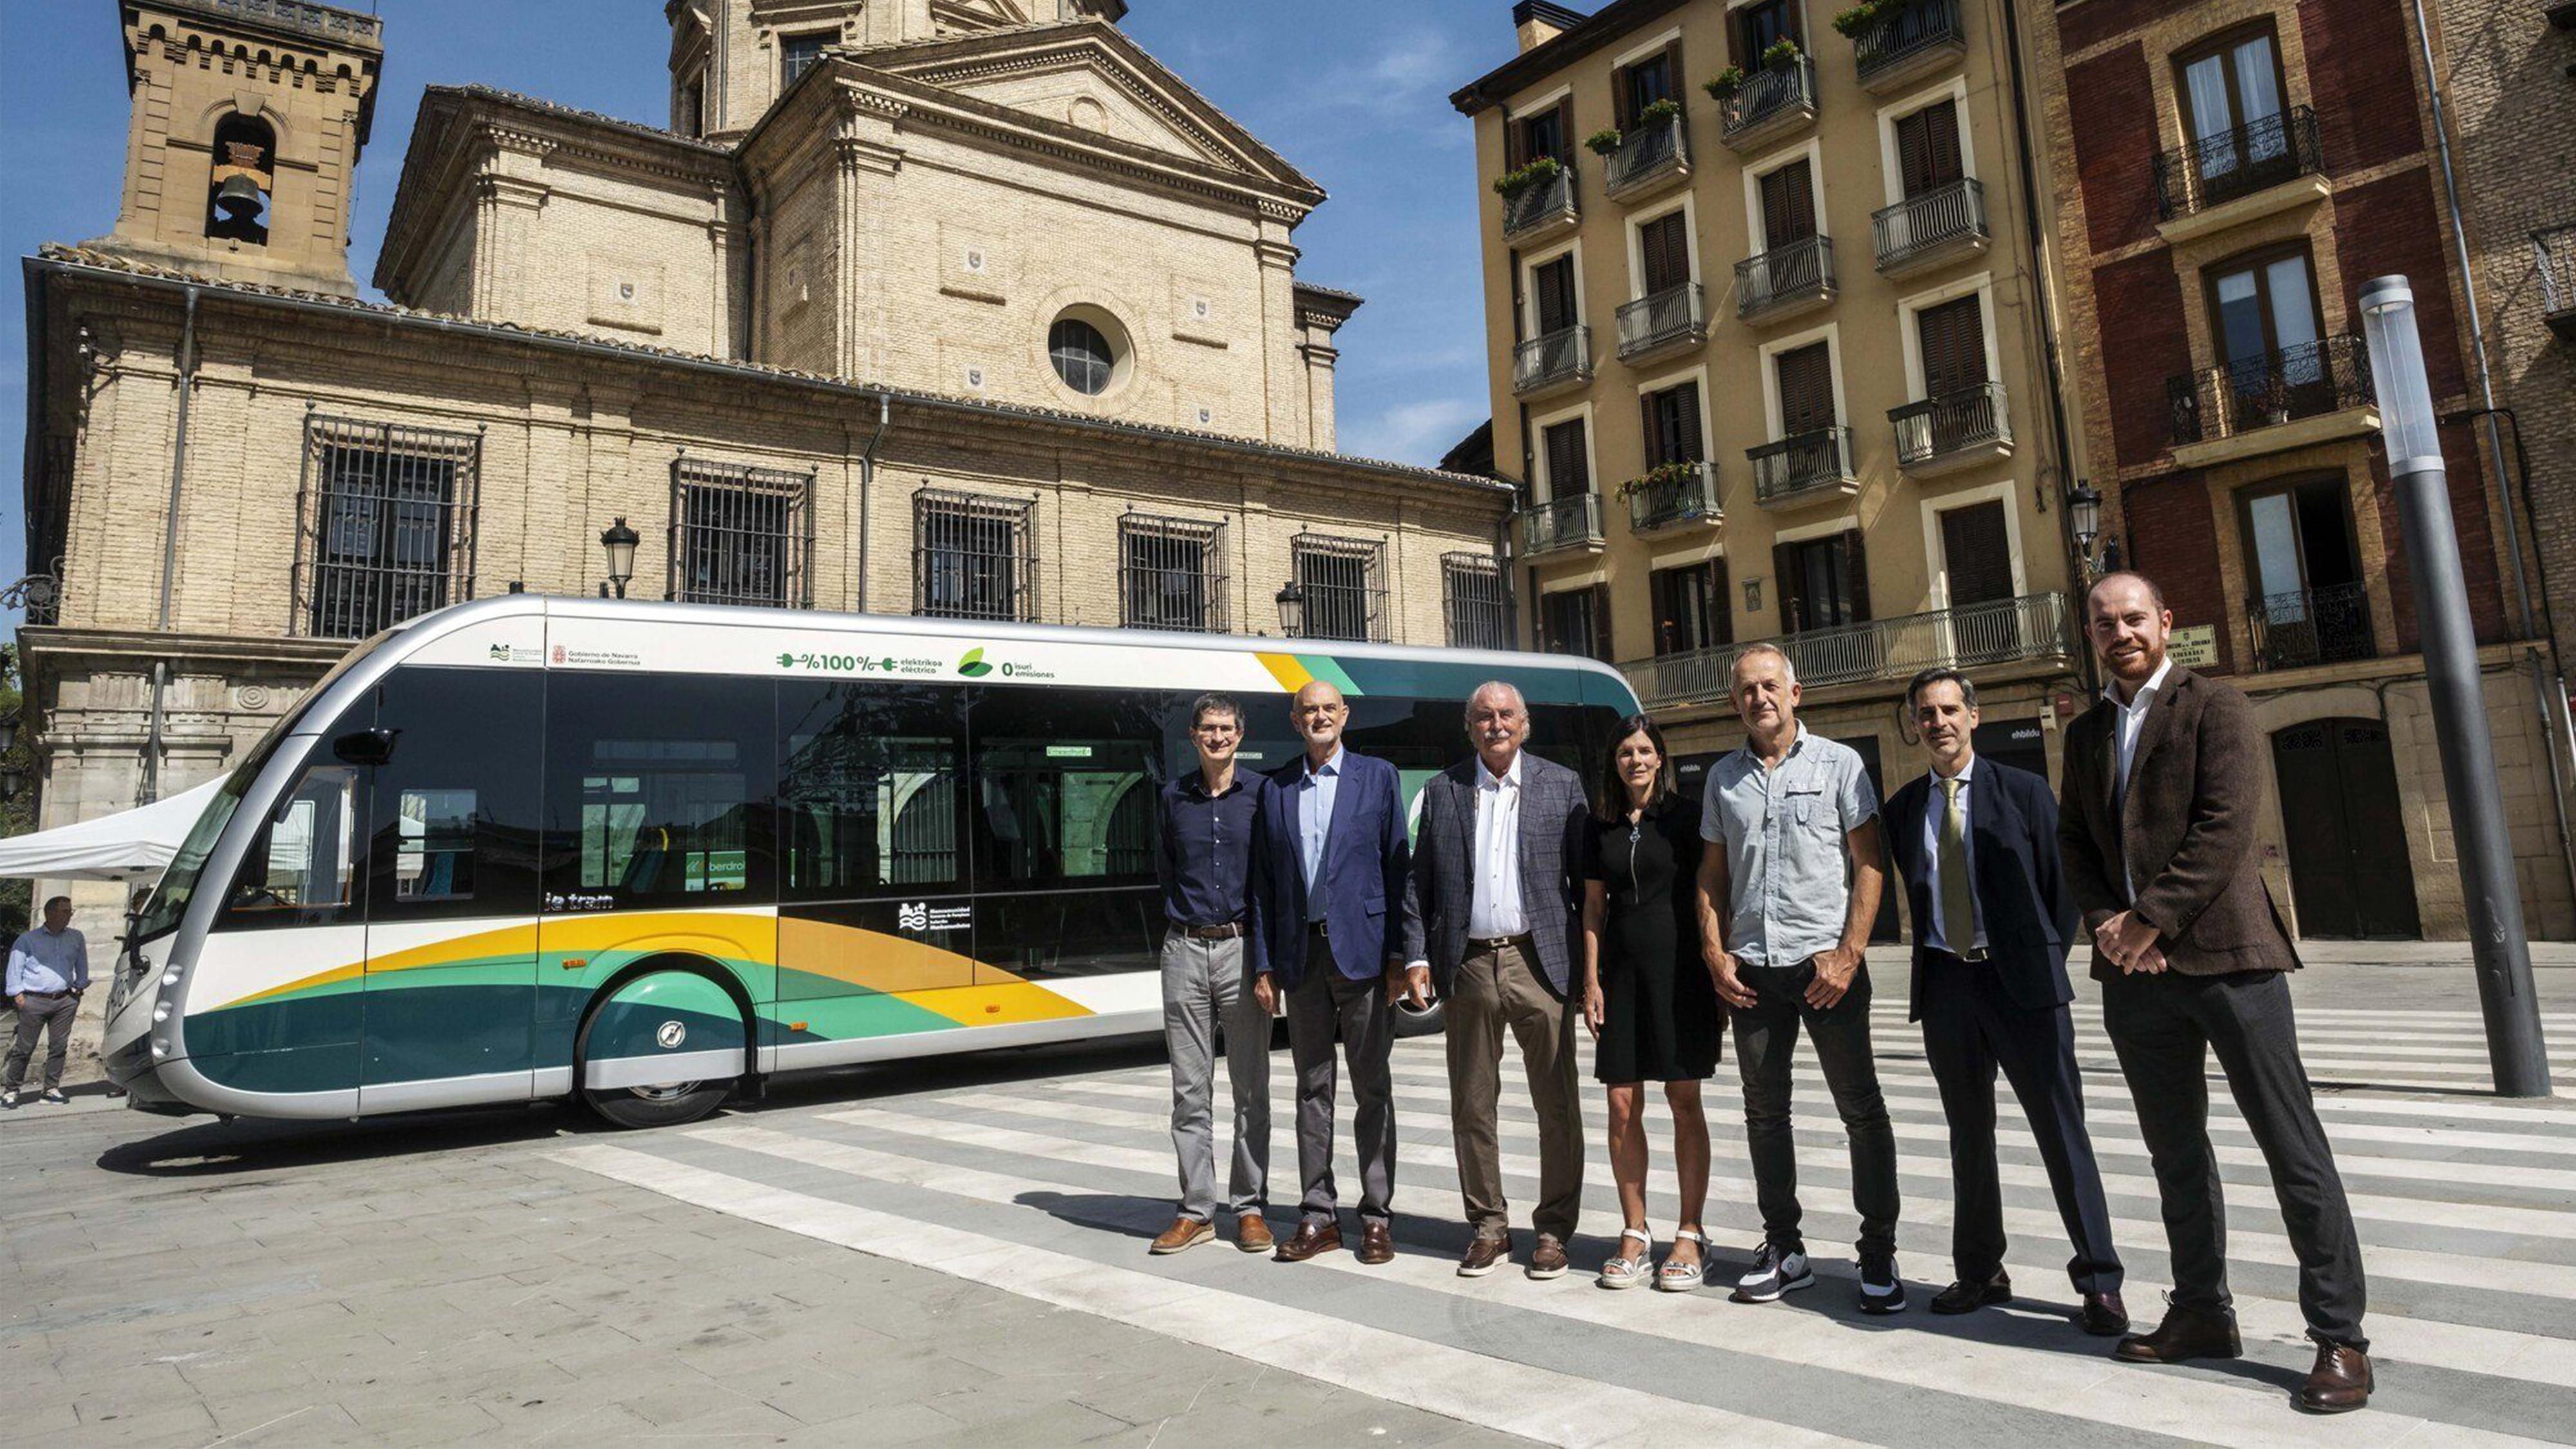 Abbiamo avuto il piacere di partecipare alla presentazione dei nuovi autobus Transports Ciutat Comtal (TCC) del gruppo Moventis a Pamplona